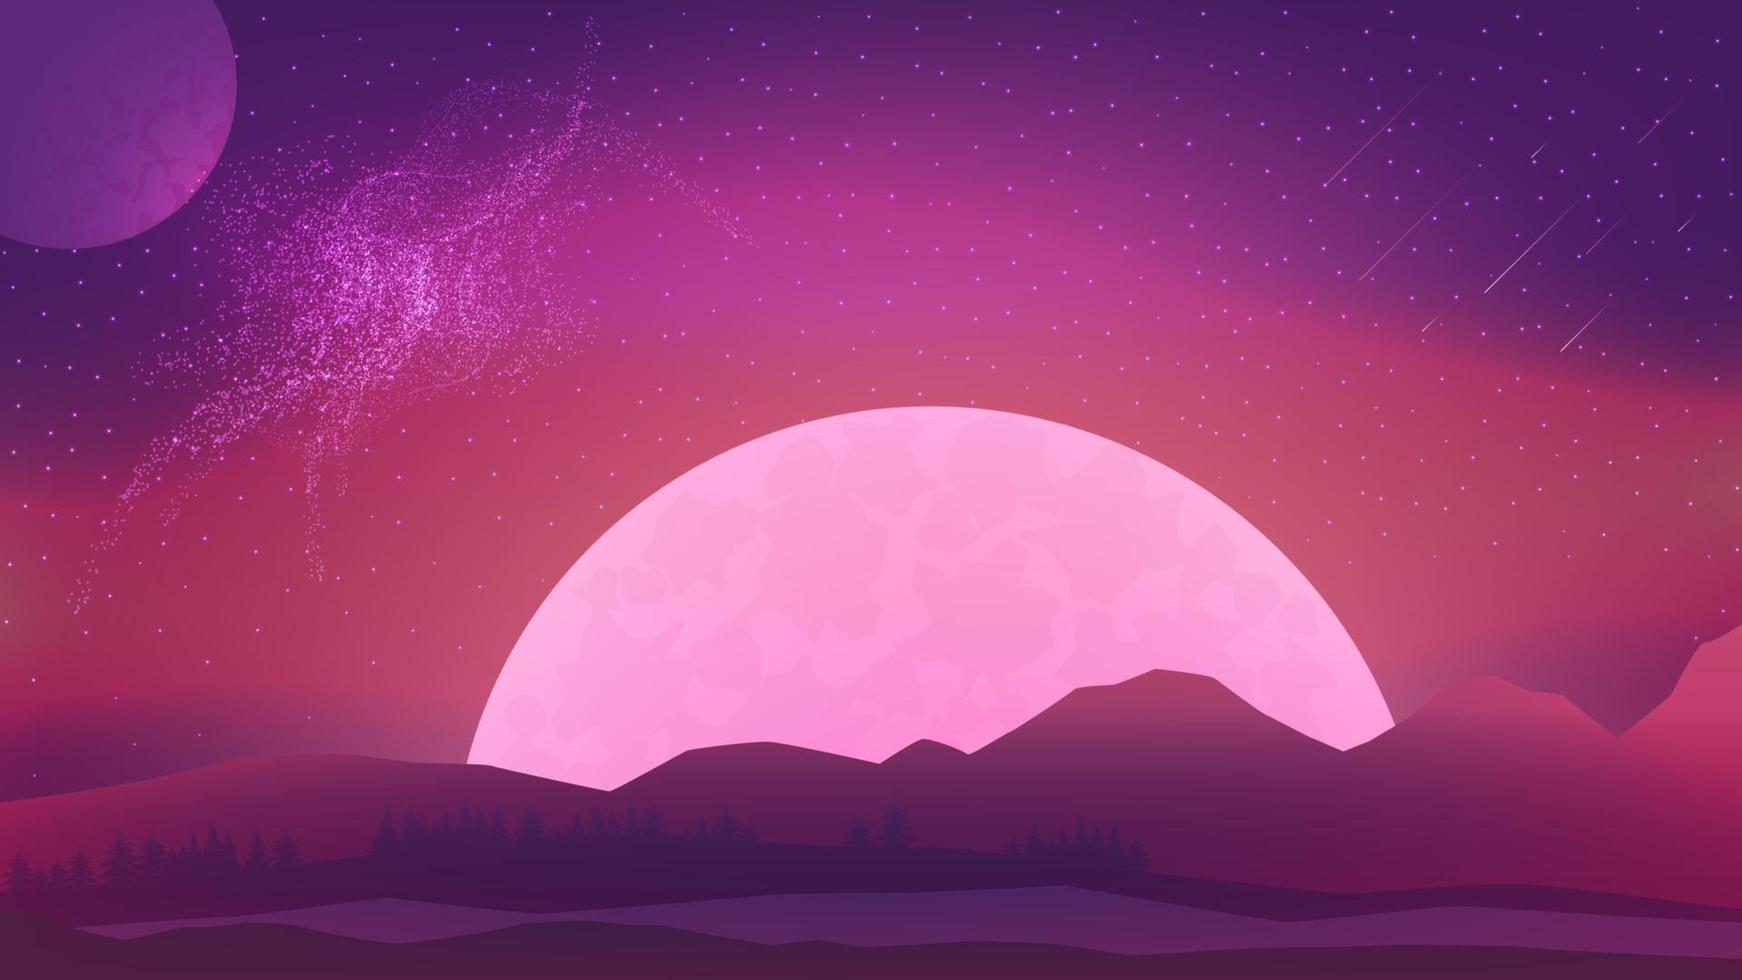 Rosa abendliche Marslandschaft mit Sternenhimmel, großem Planeten am Horizont und Nadelwald. kosmische Landschaft mit Meteoren am Himmel und Planeten vektor